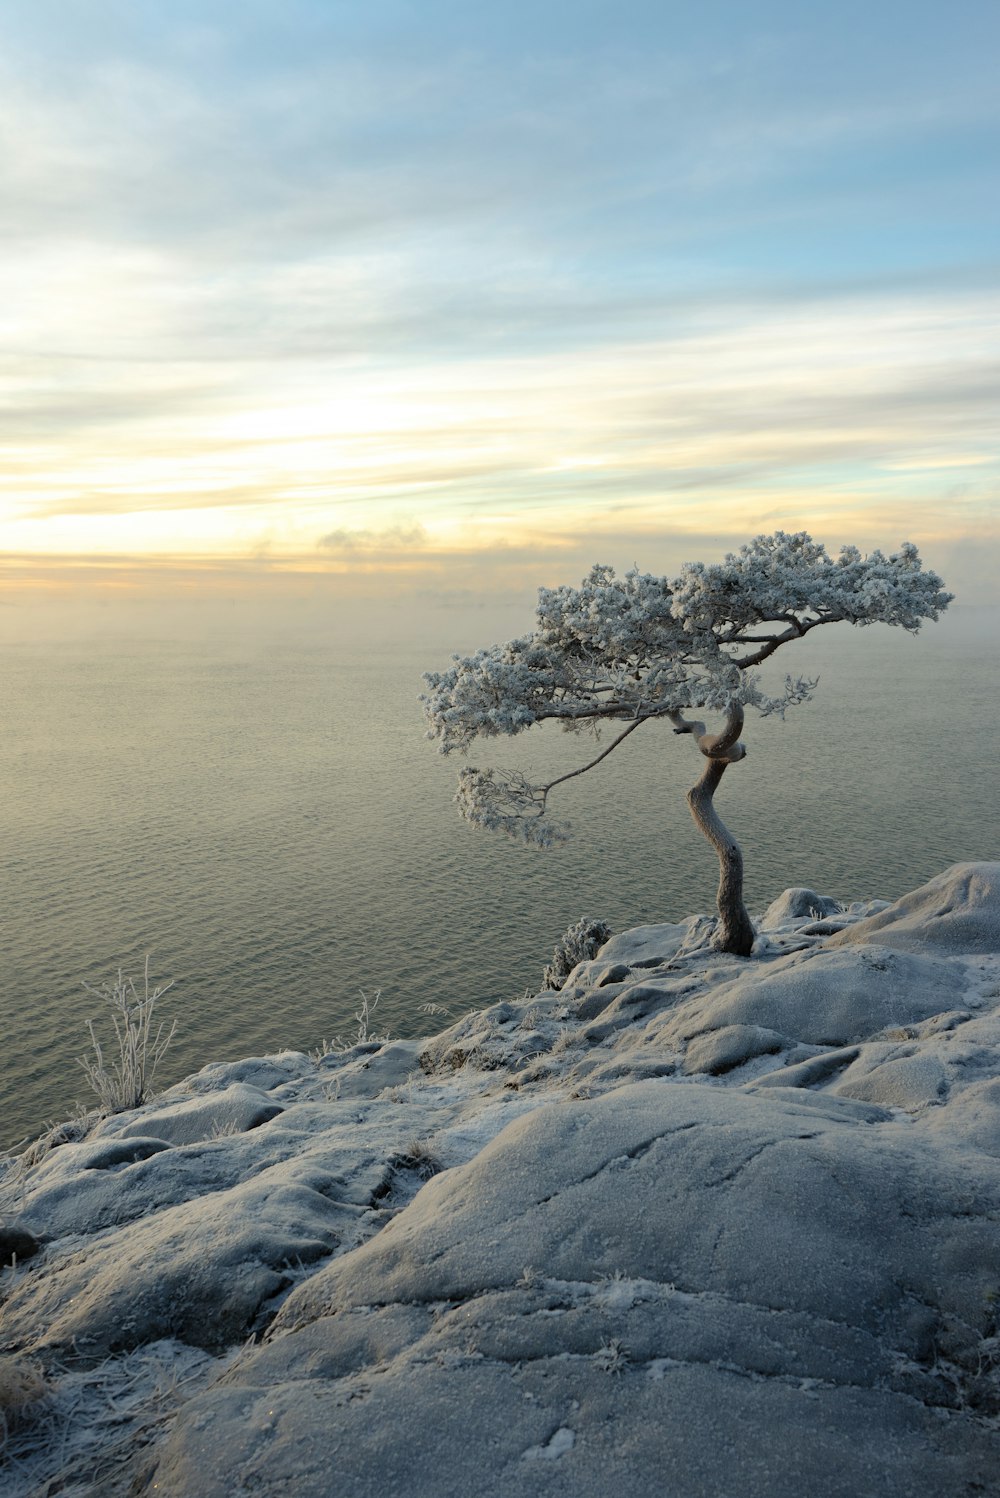 Un albero solitario seduto sulla cima di una collina coperta di neve